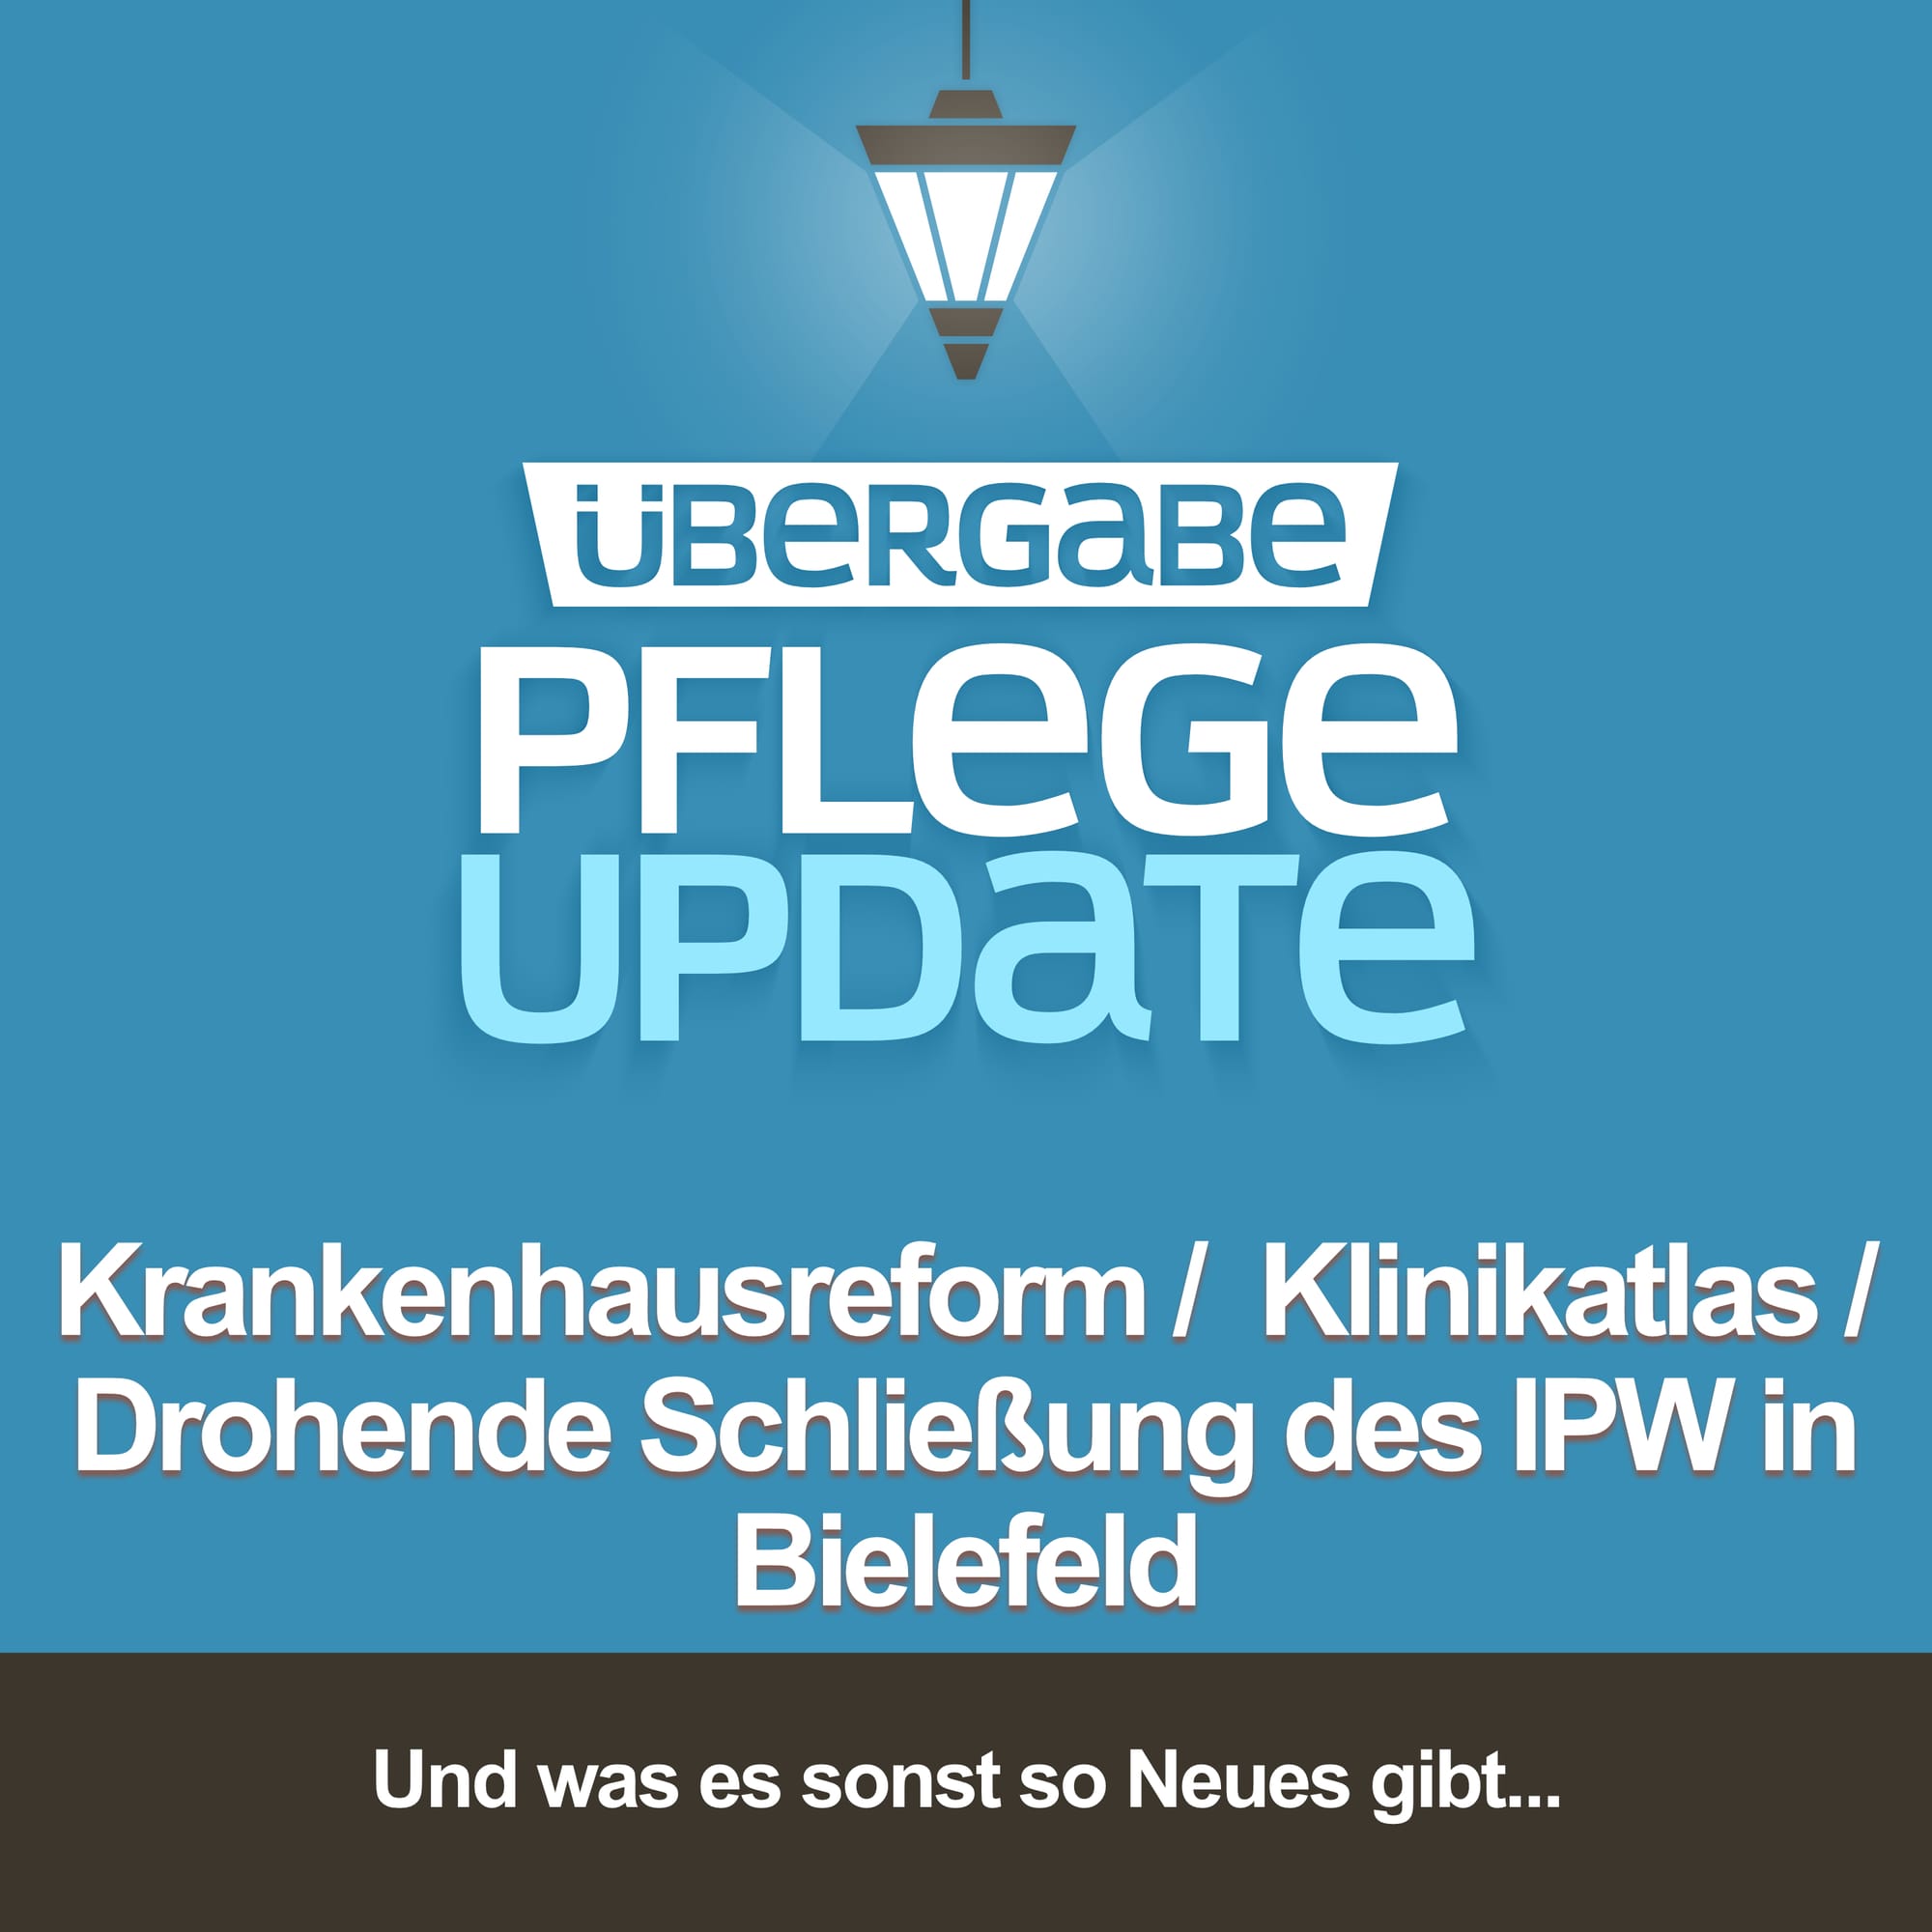 Krankenhausreform / Klinikatlas / Drohende Schließung des IPW in Bielefeld